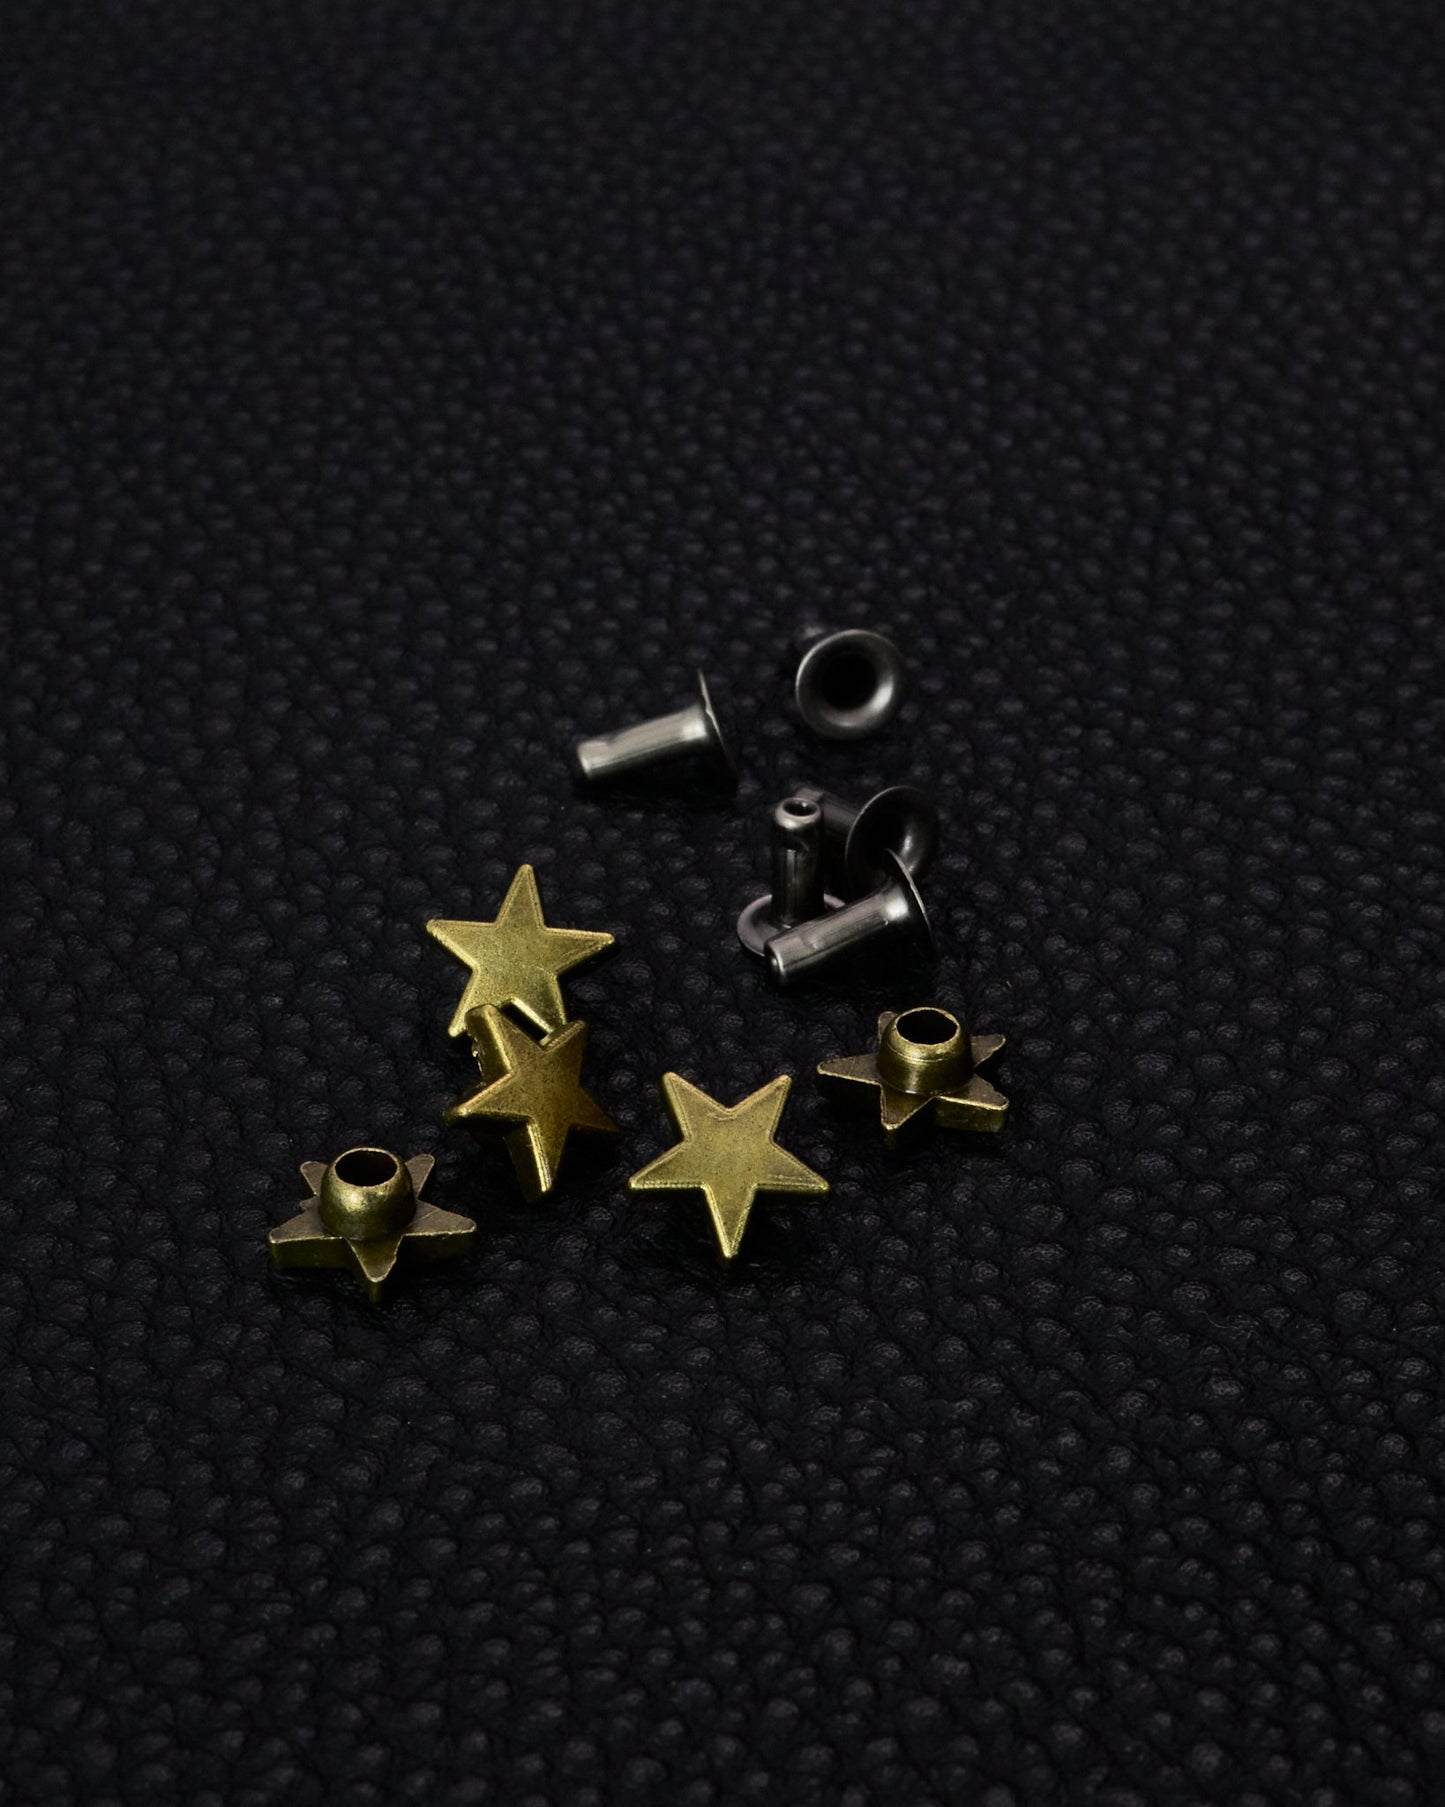 クラフト金具 飾り バネボタン カシメパーツ 9㎜ 星 5個(組)入り JPC156-4